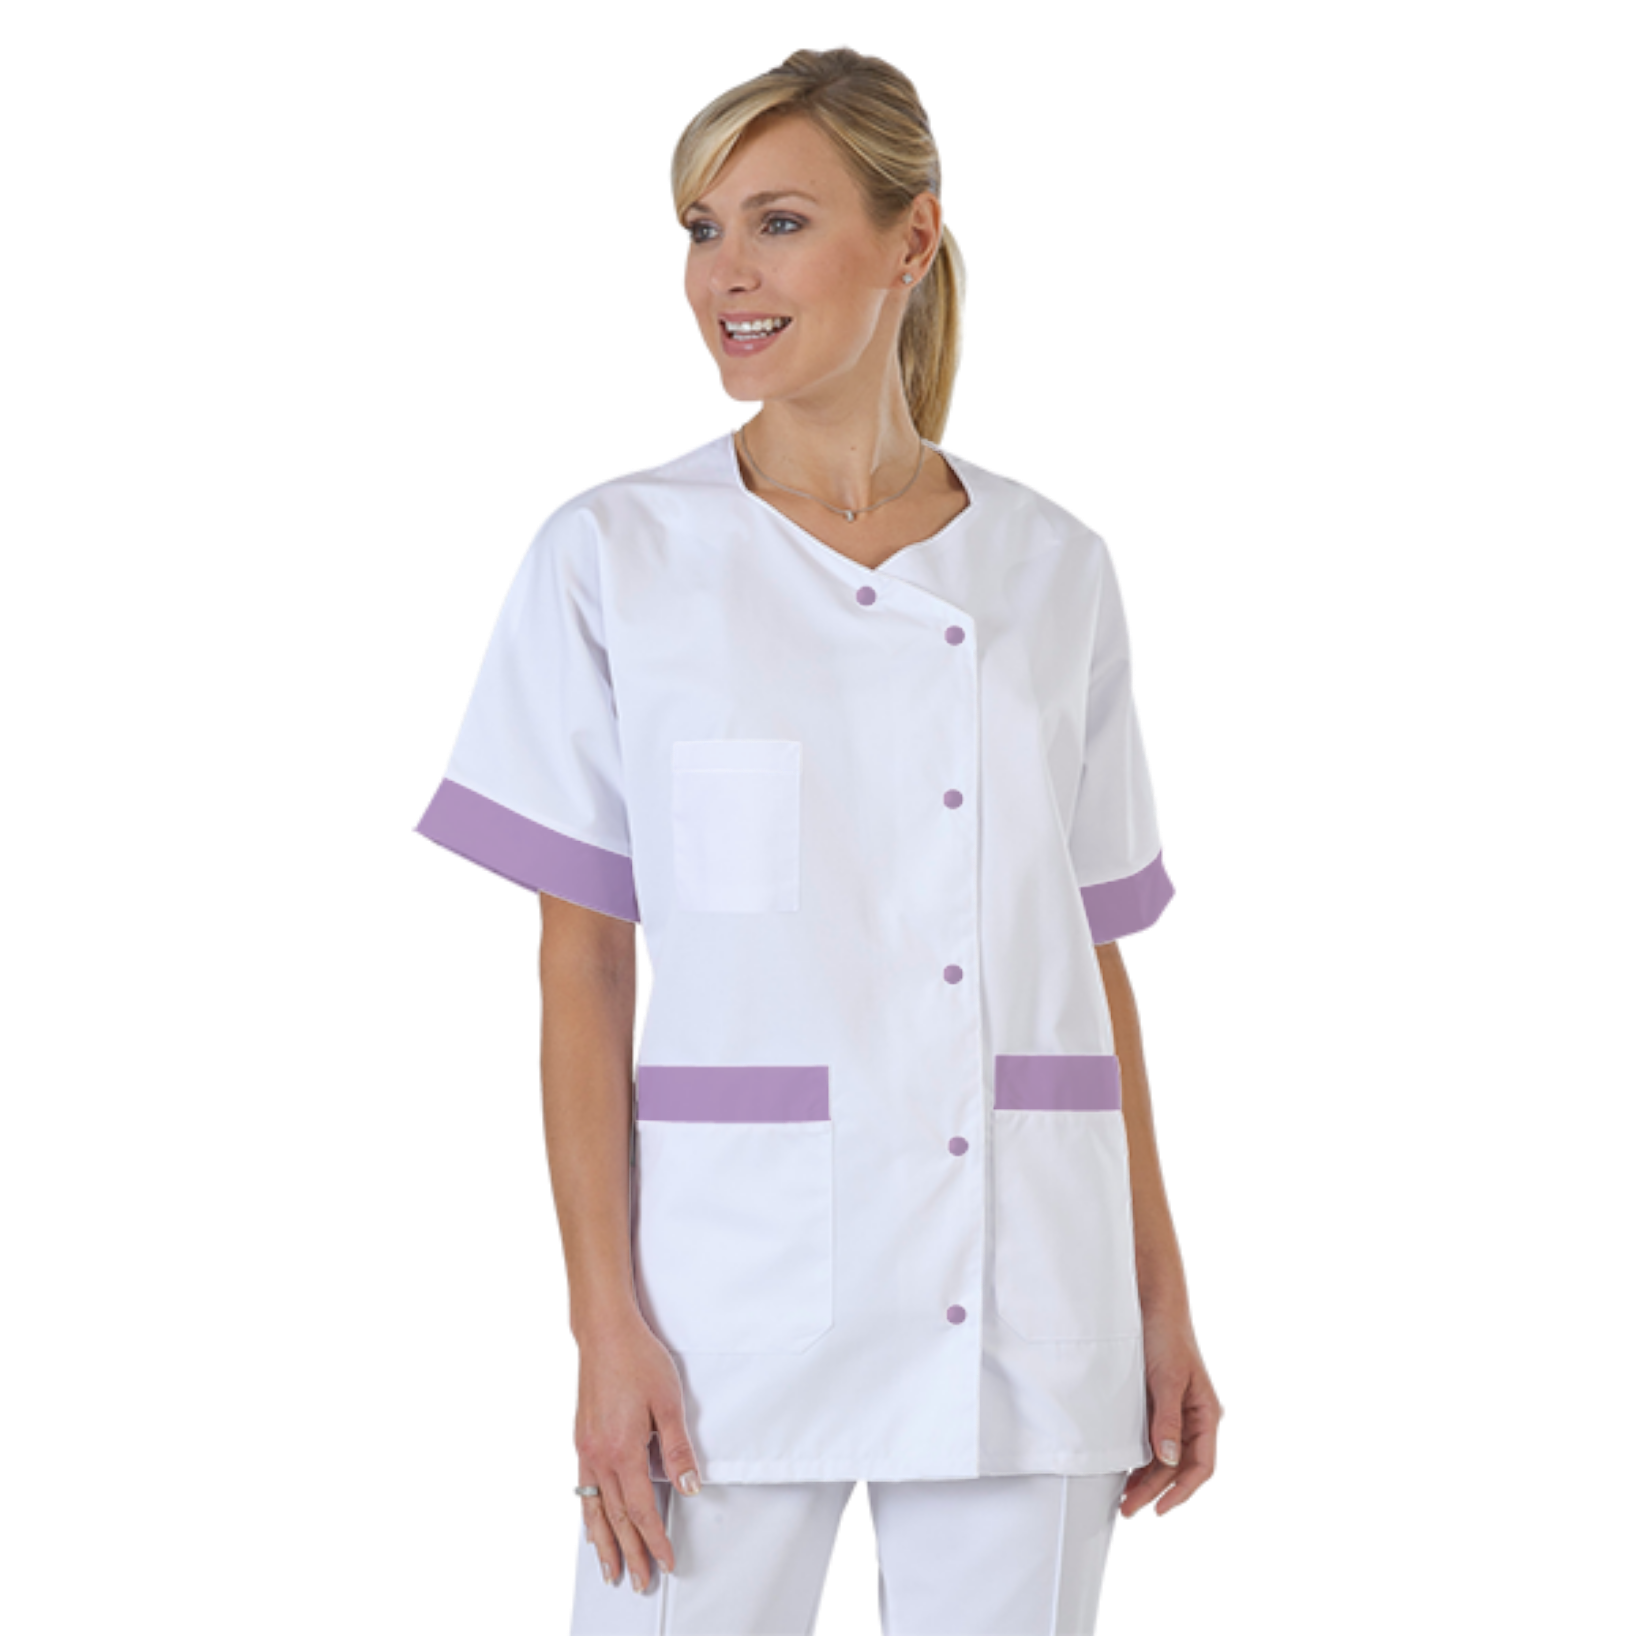 blouse-infirmiere-personnalise-col-trapeze acheté - par Alexandre - le 27-11-2019